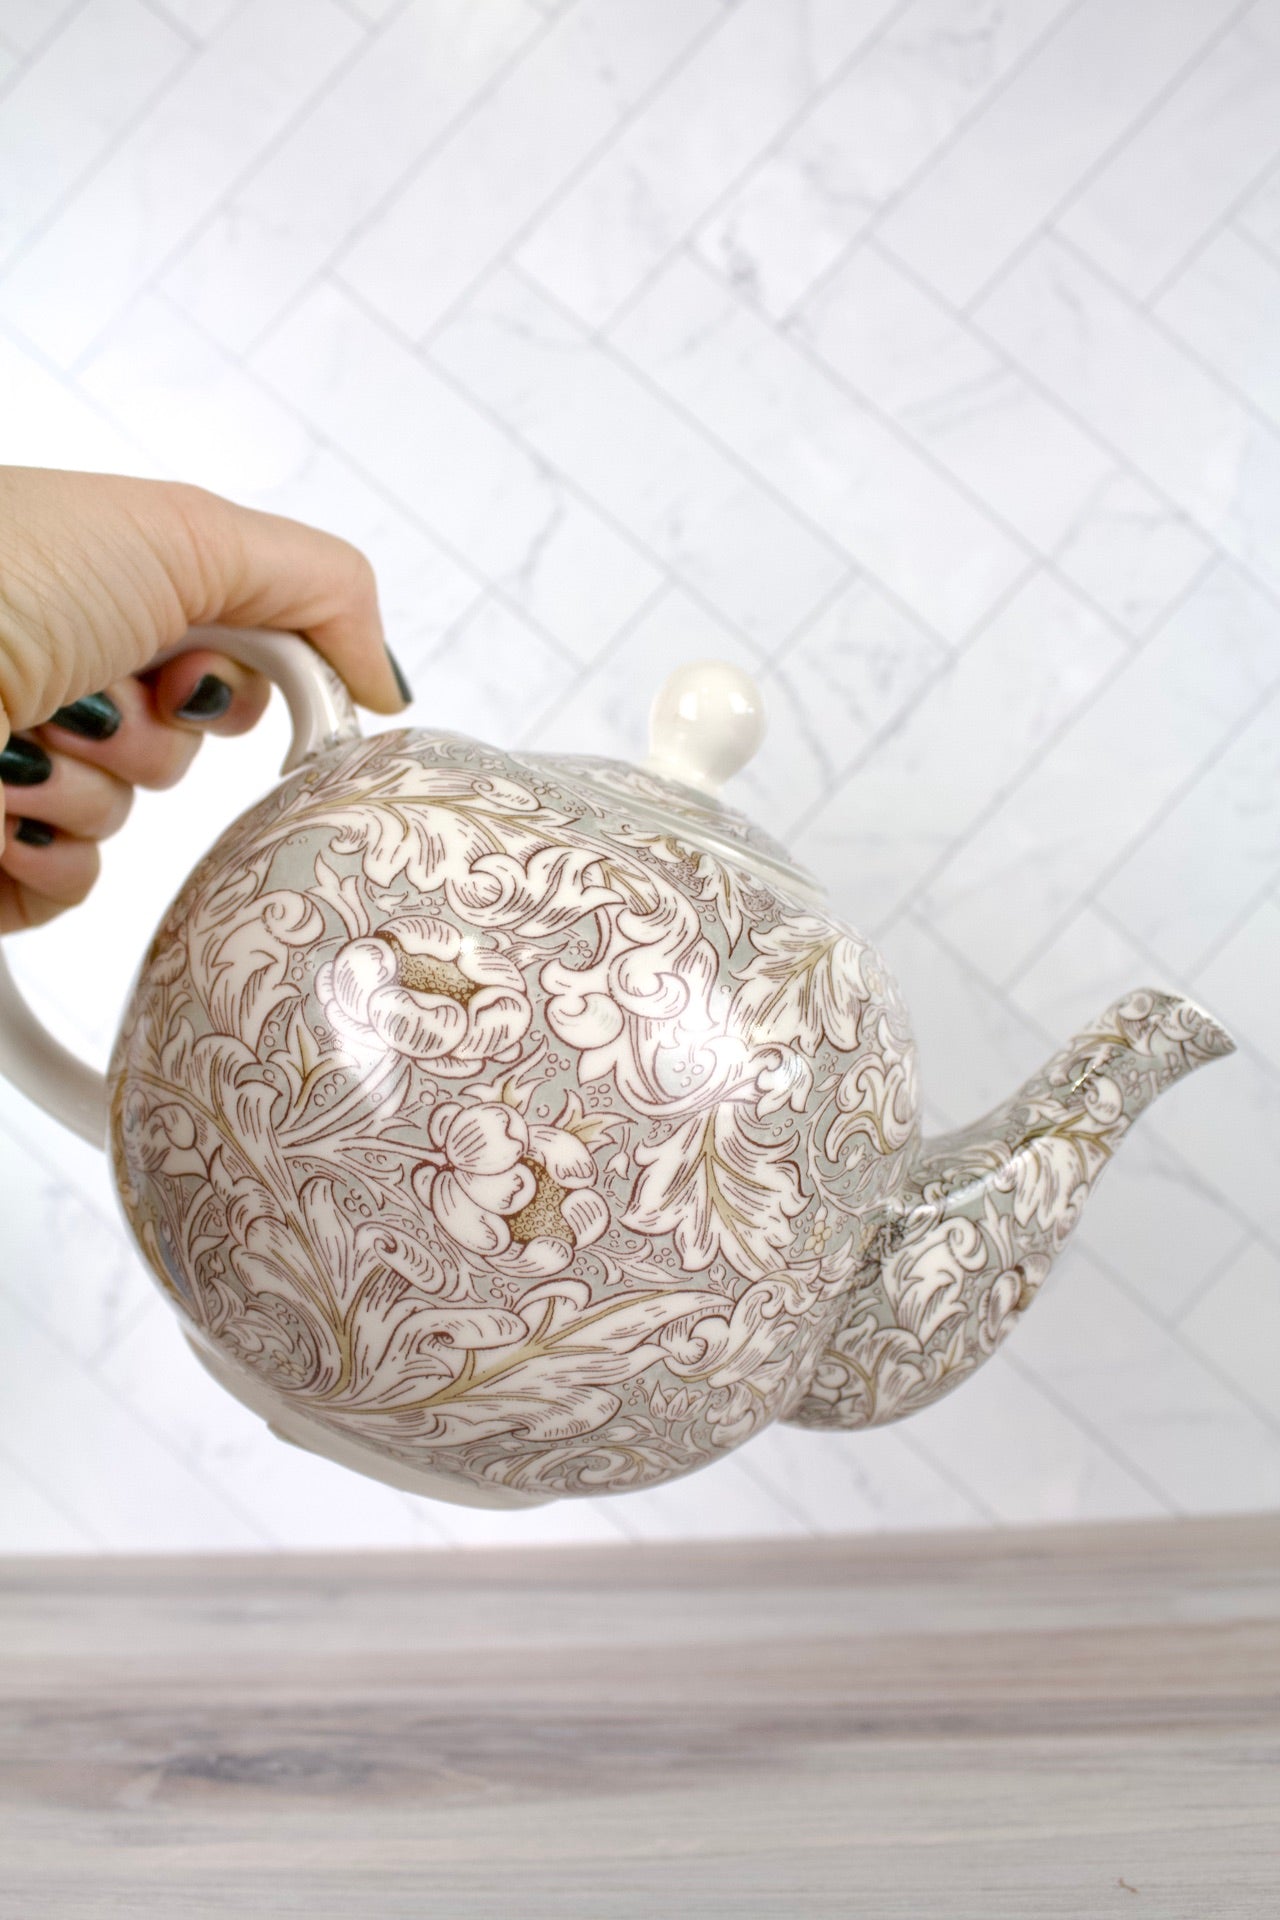 William Morris Bachelor's Button Teapot